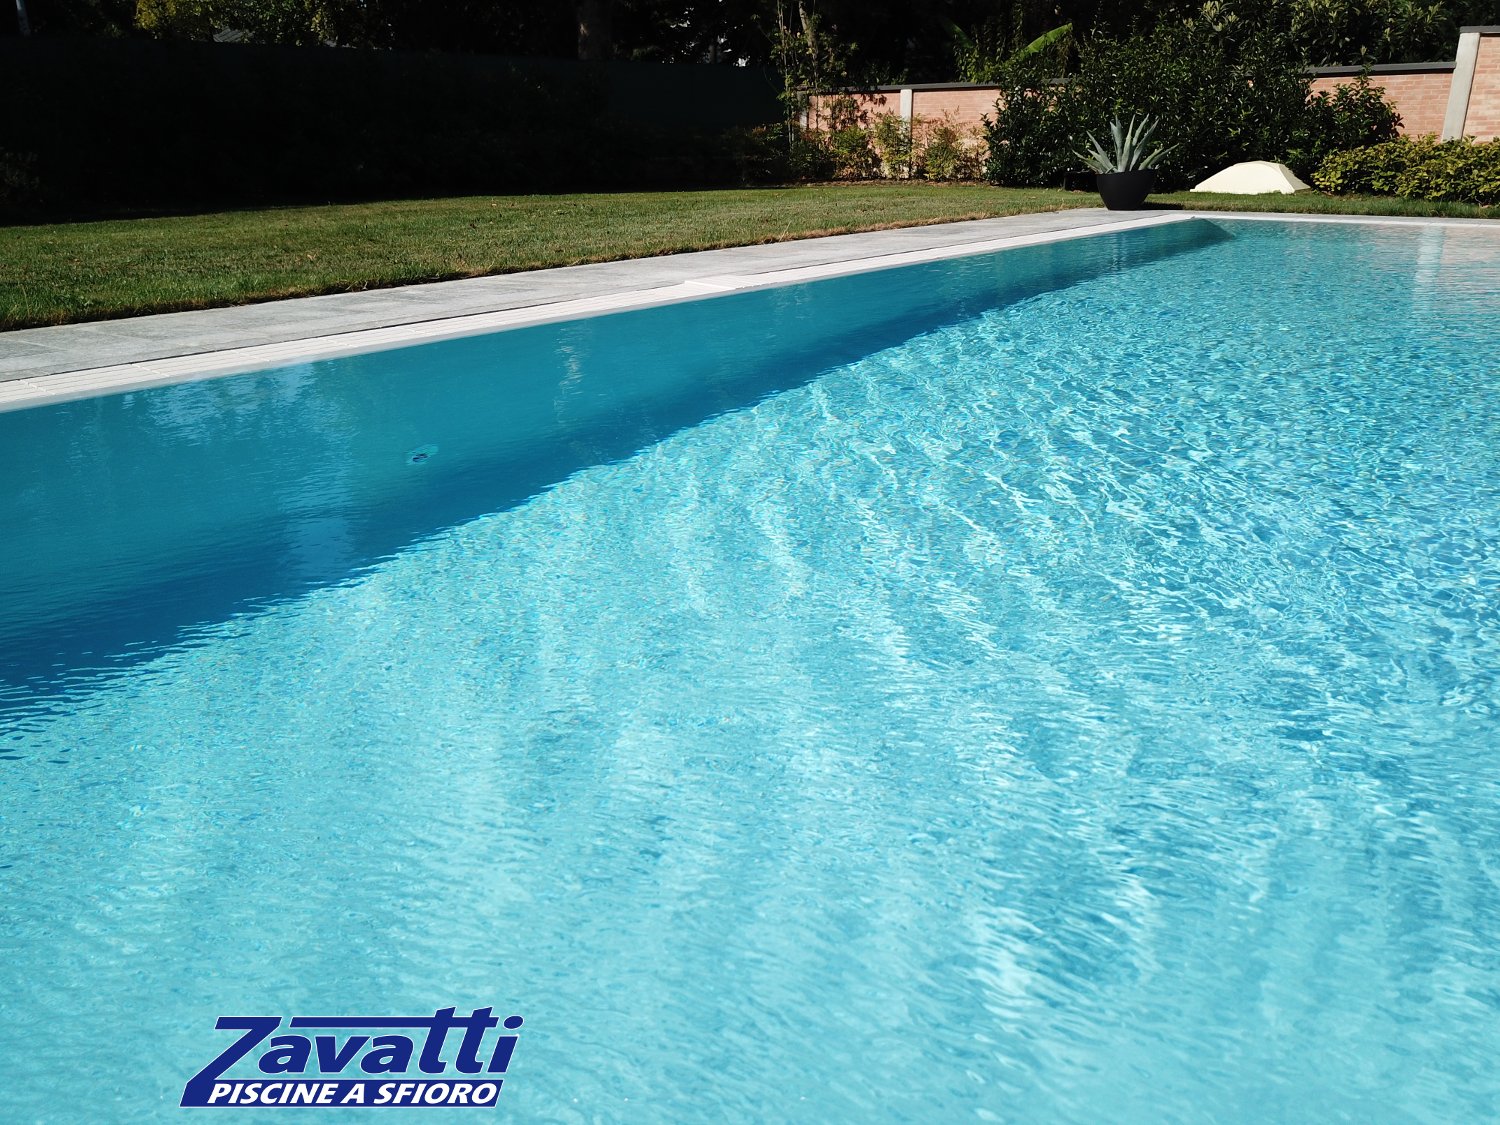 Acqua cristallina di una piscina a sfioro autopulente Made by Zavatti